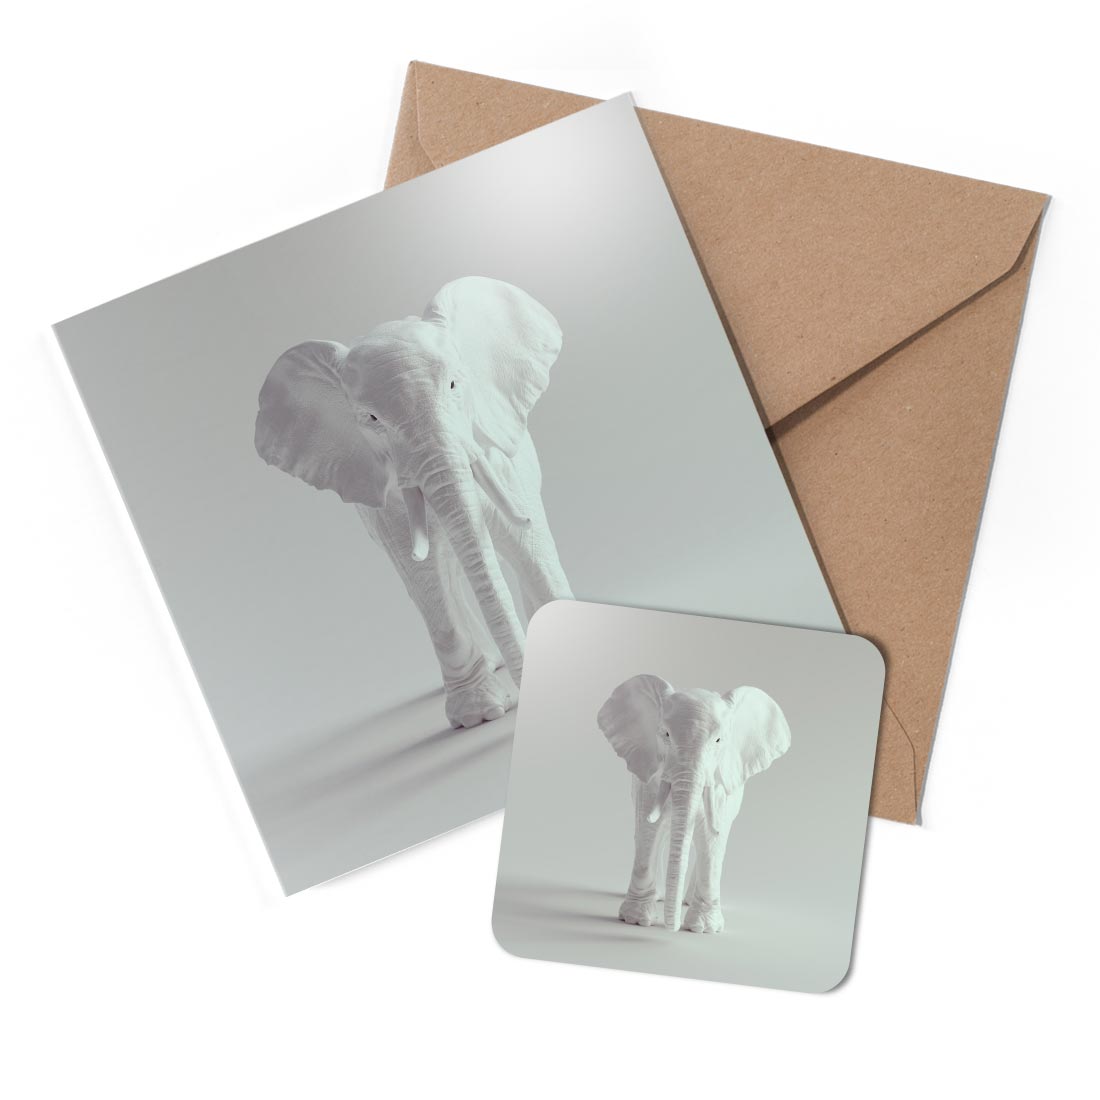 1 x Greeting Card & Coaster Set - White Elephant Animal #53559